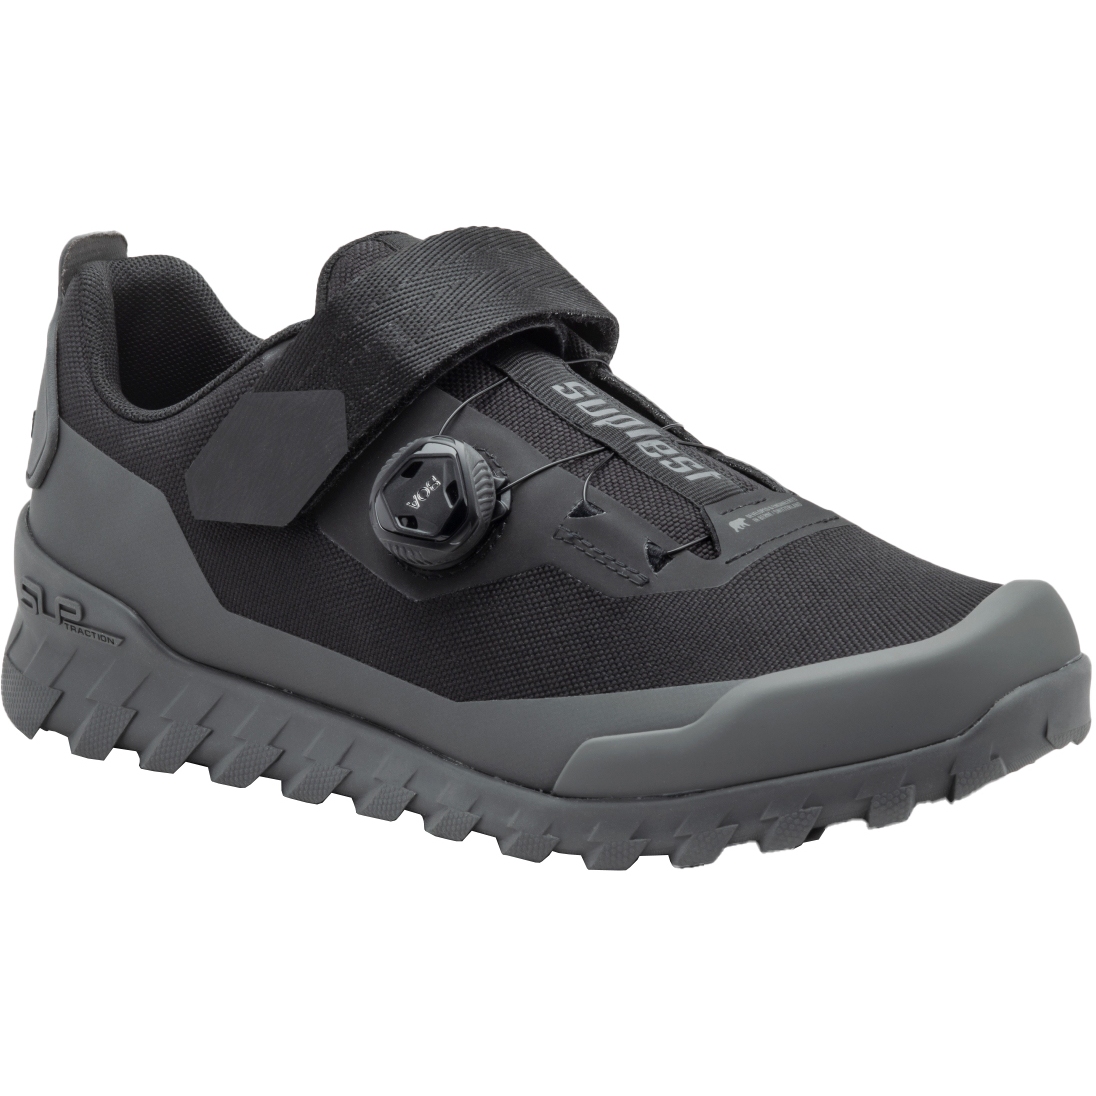 Produktbild von Suplest Offroad Trail Performance MTB Schuhe - schwarz/grau 03.051.